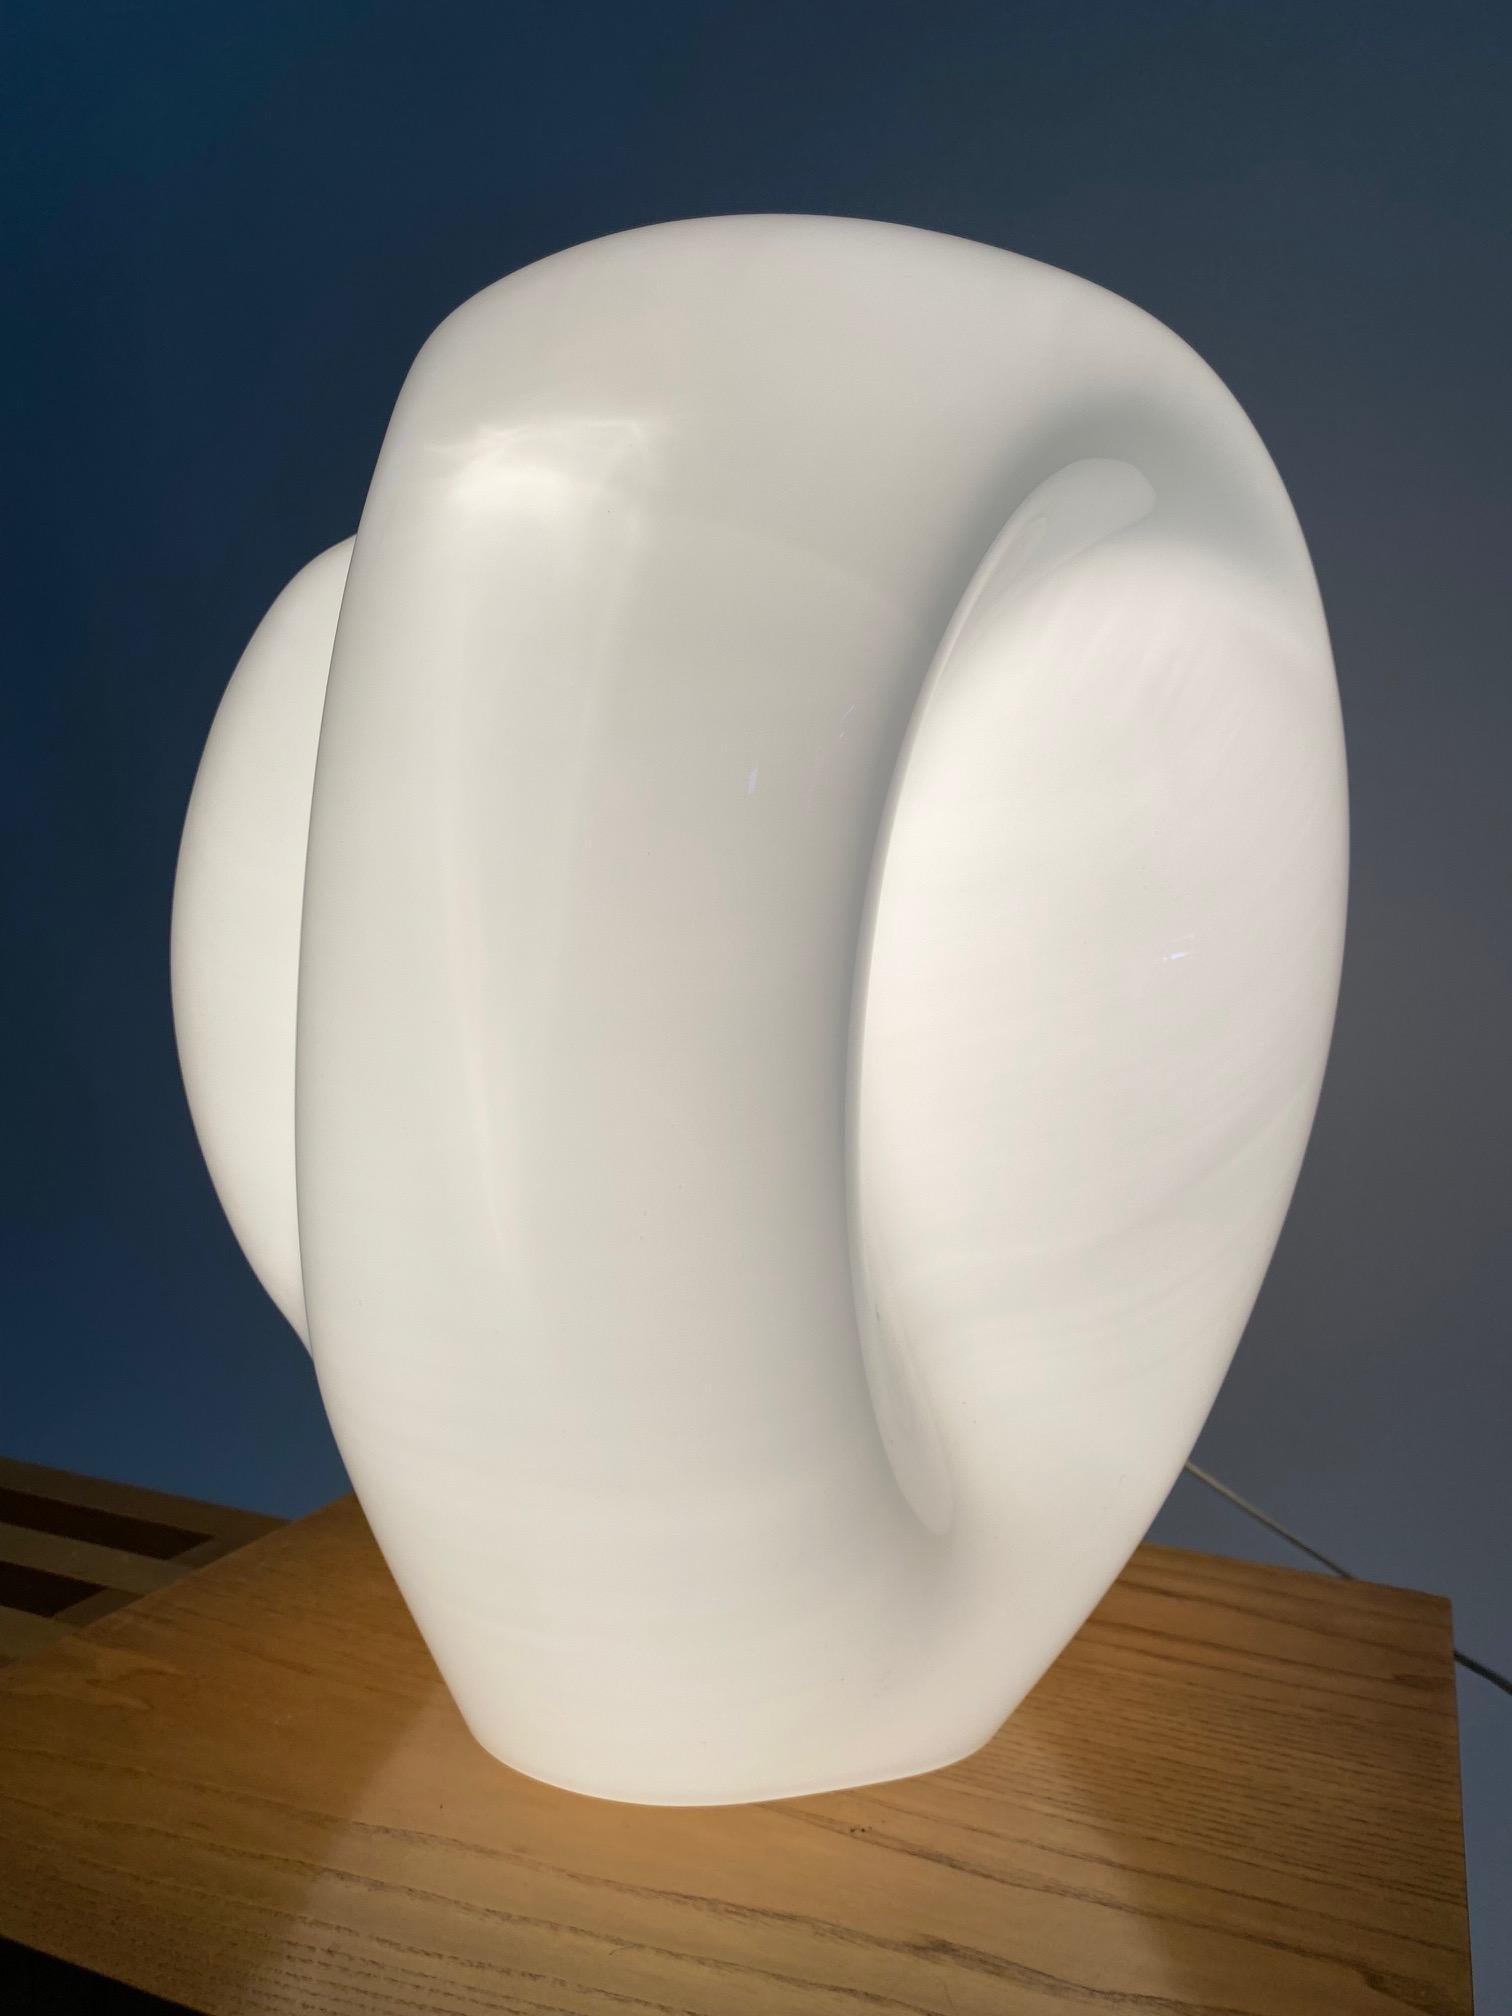 Monumentale lampe de table en verre blanc de Murano, attribuable au grand designer italien Carlo Nason. 

Il s'agit d'un objet sculptural, d'un grand impact visuel, capable de donner du prestige et du raffinement à l'environnement domestique.